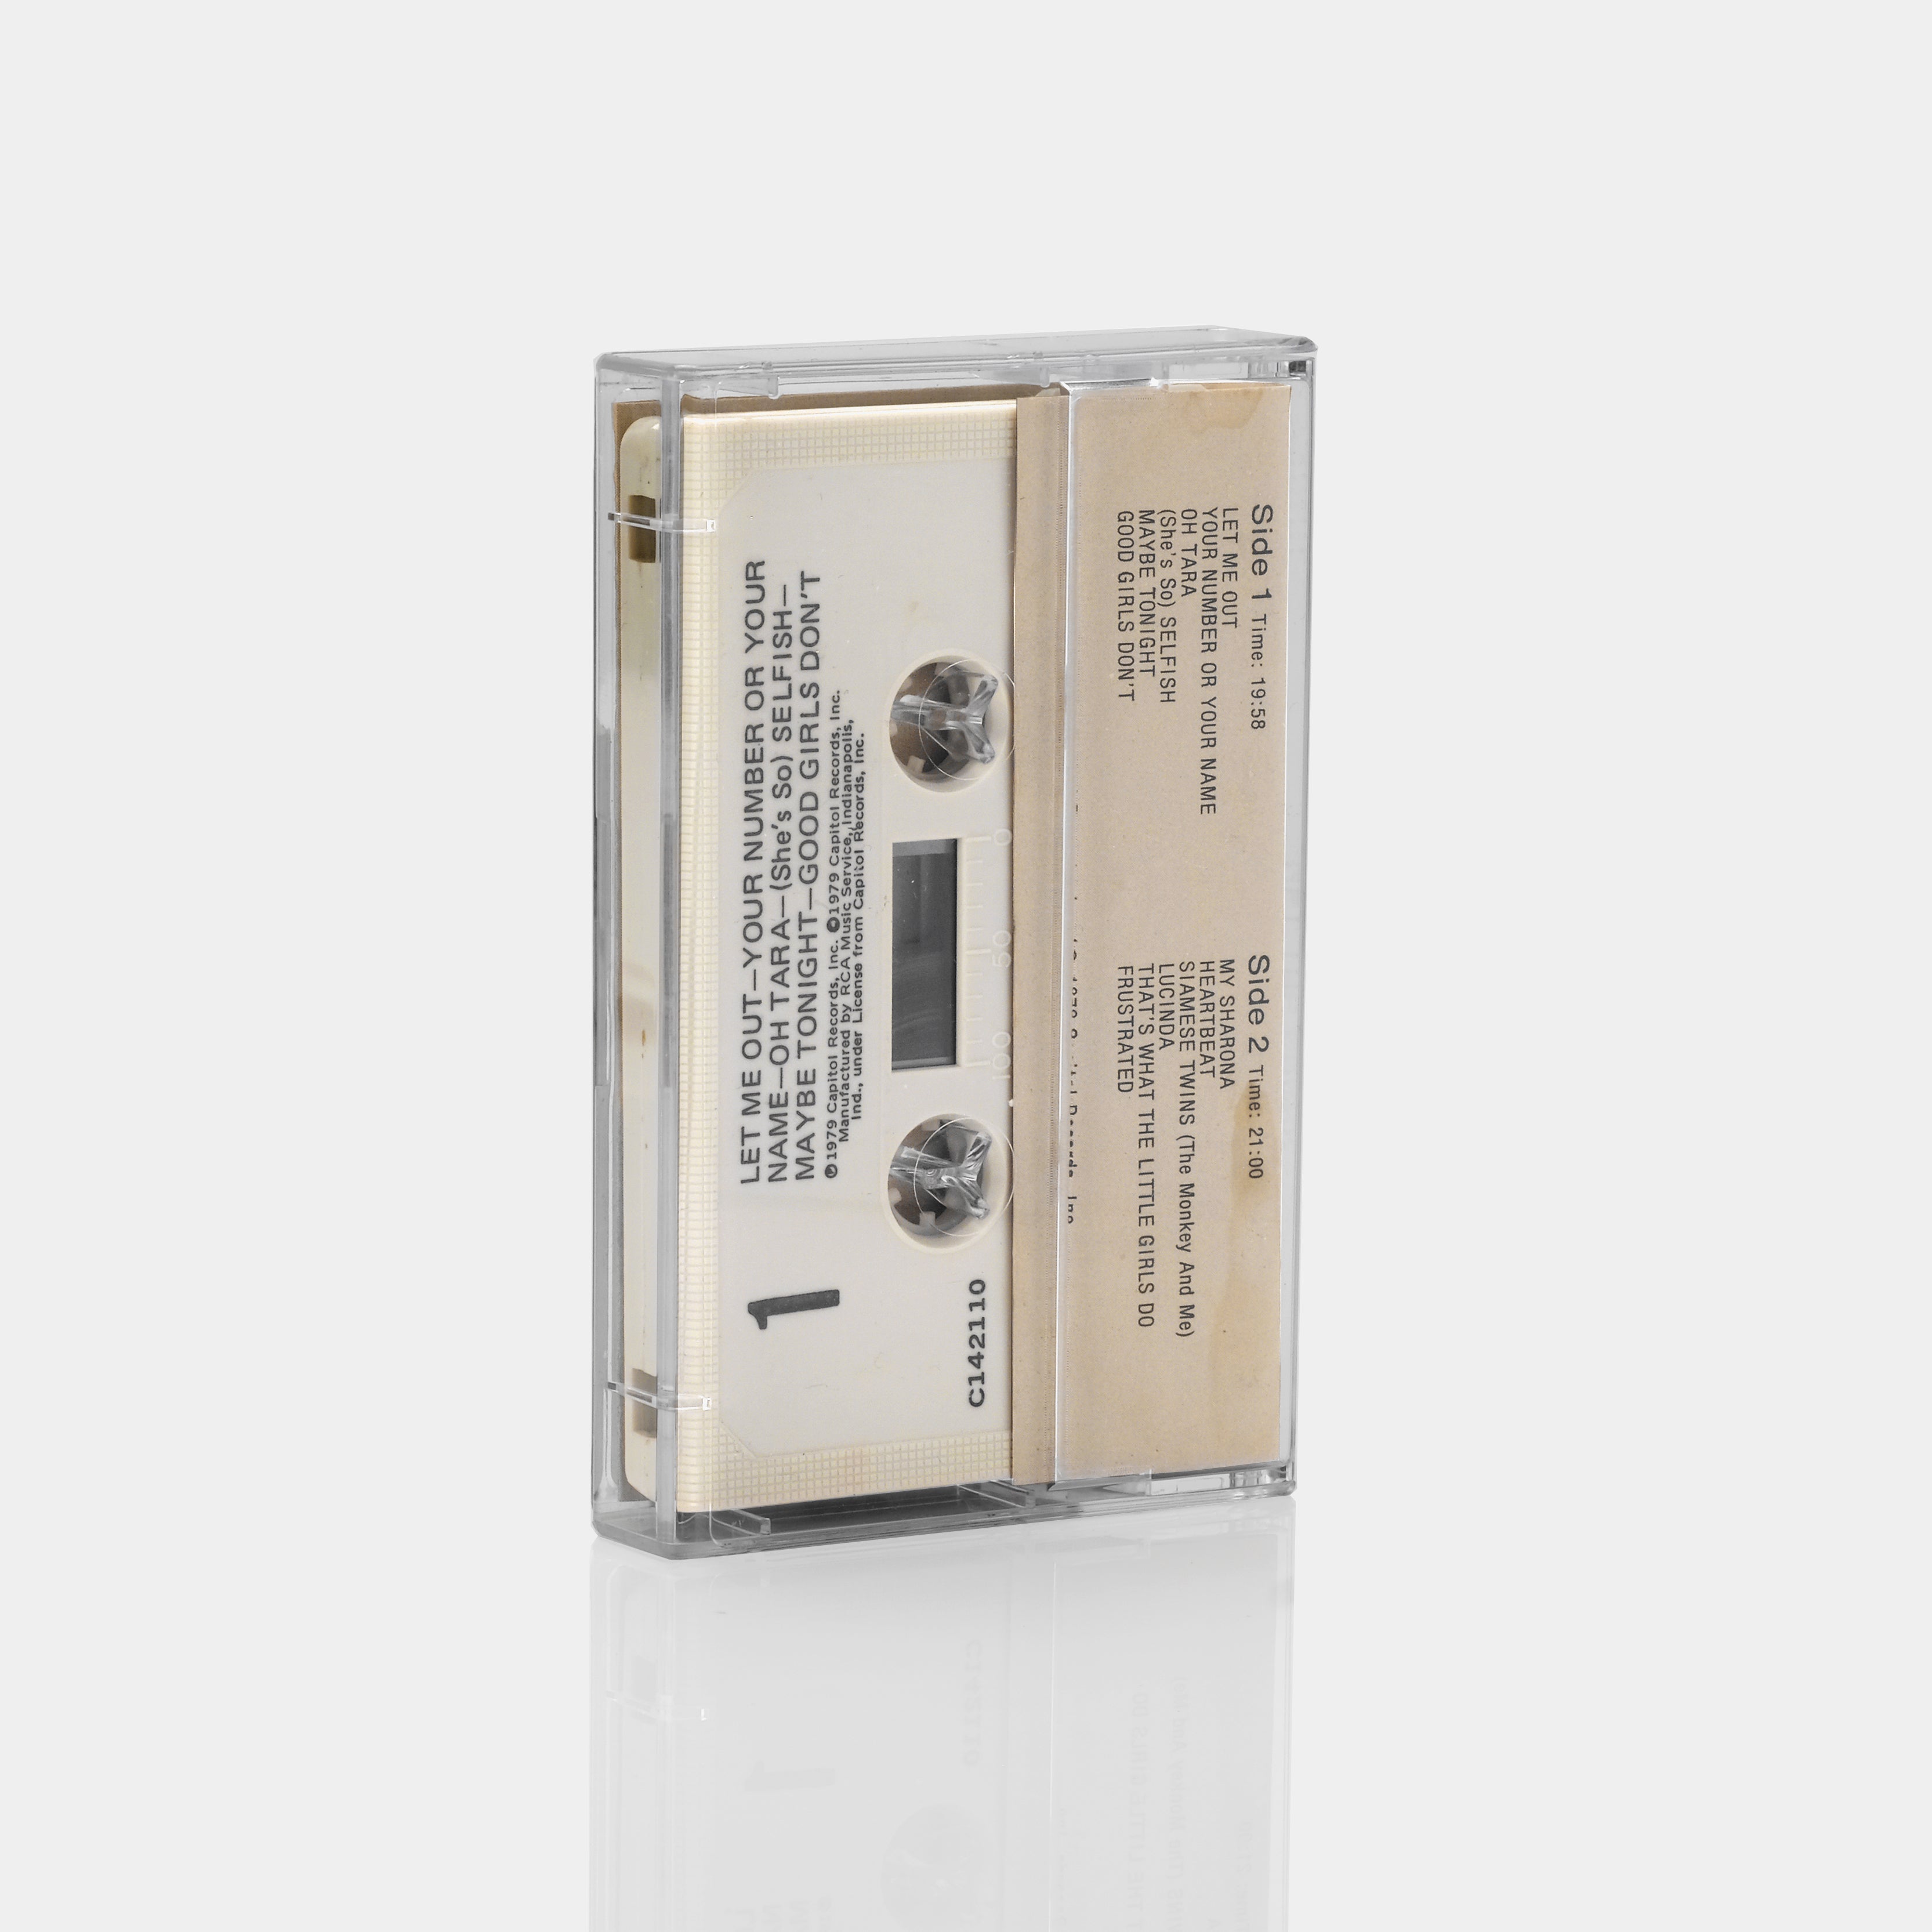 The Knack - Get The Knack Cassette Tape